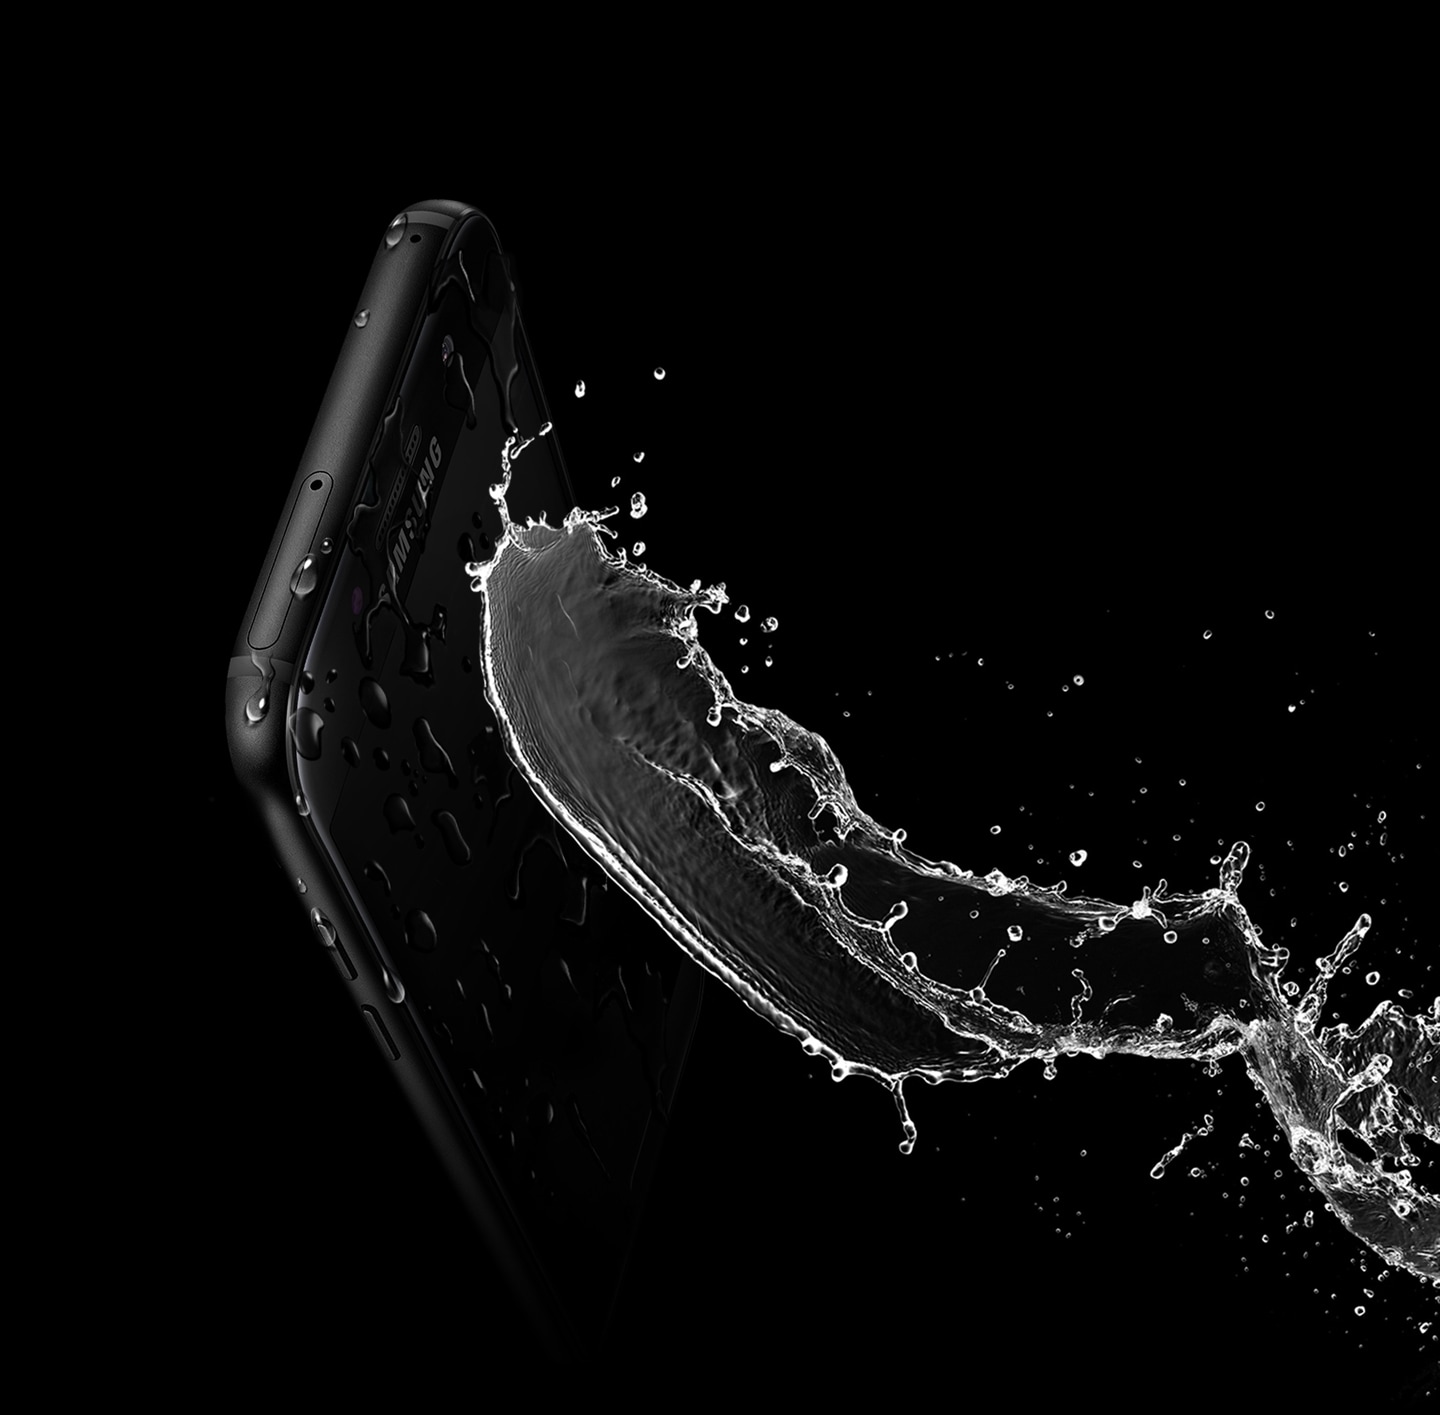 Зображення, що демонструє високу водонепроникність Galaxy A3 (2017) завдяки класу захисту IP68.